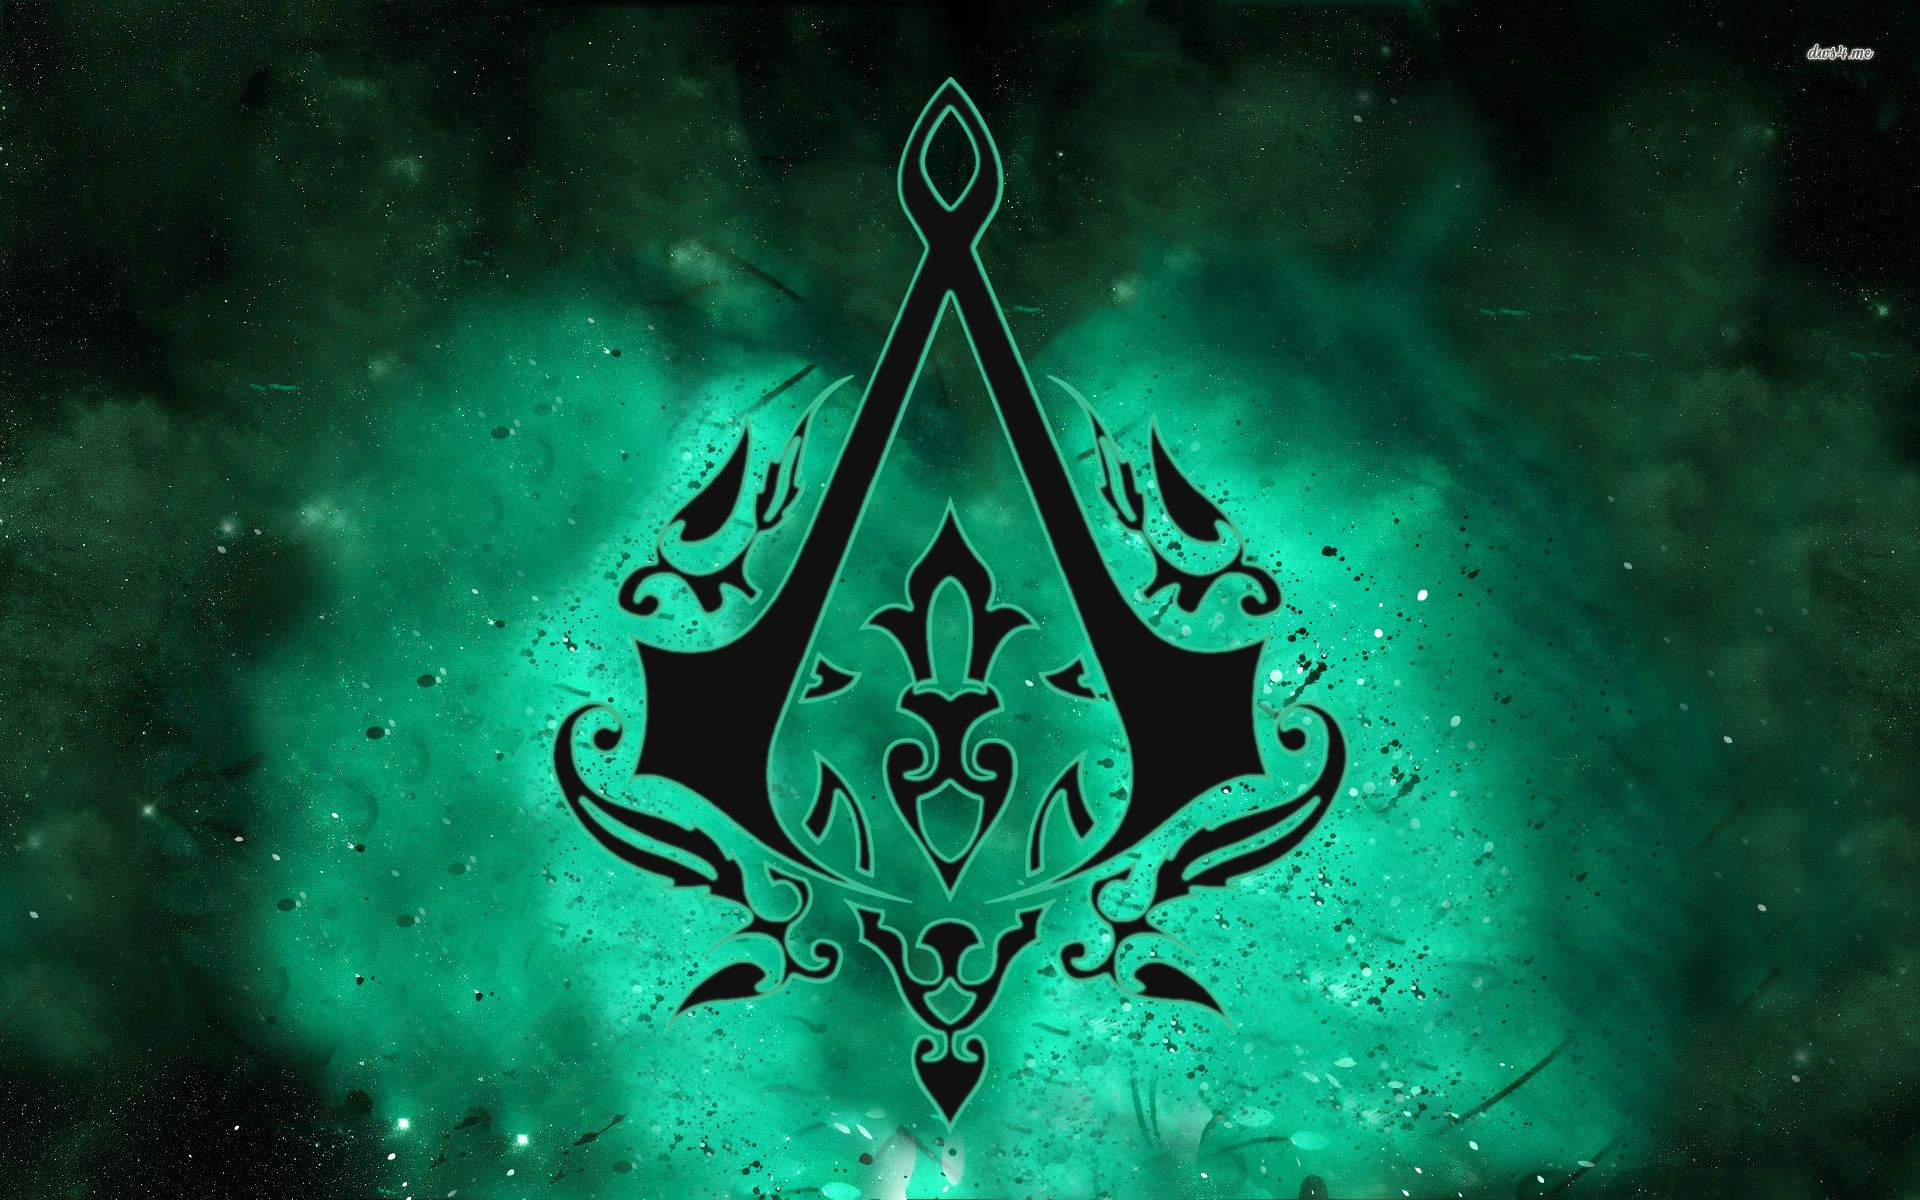 Assassin's Creed logo wallpaper wallpaper